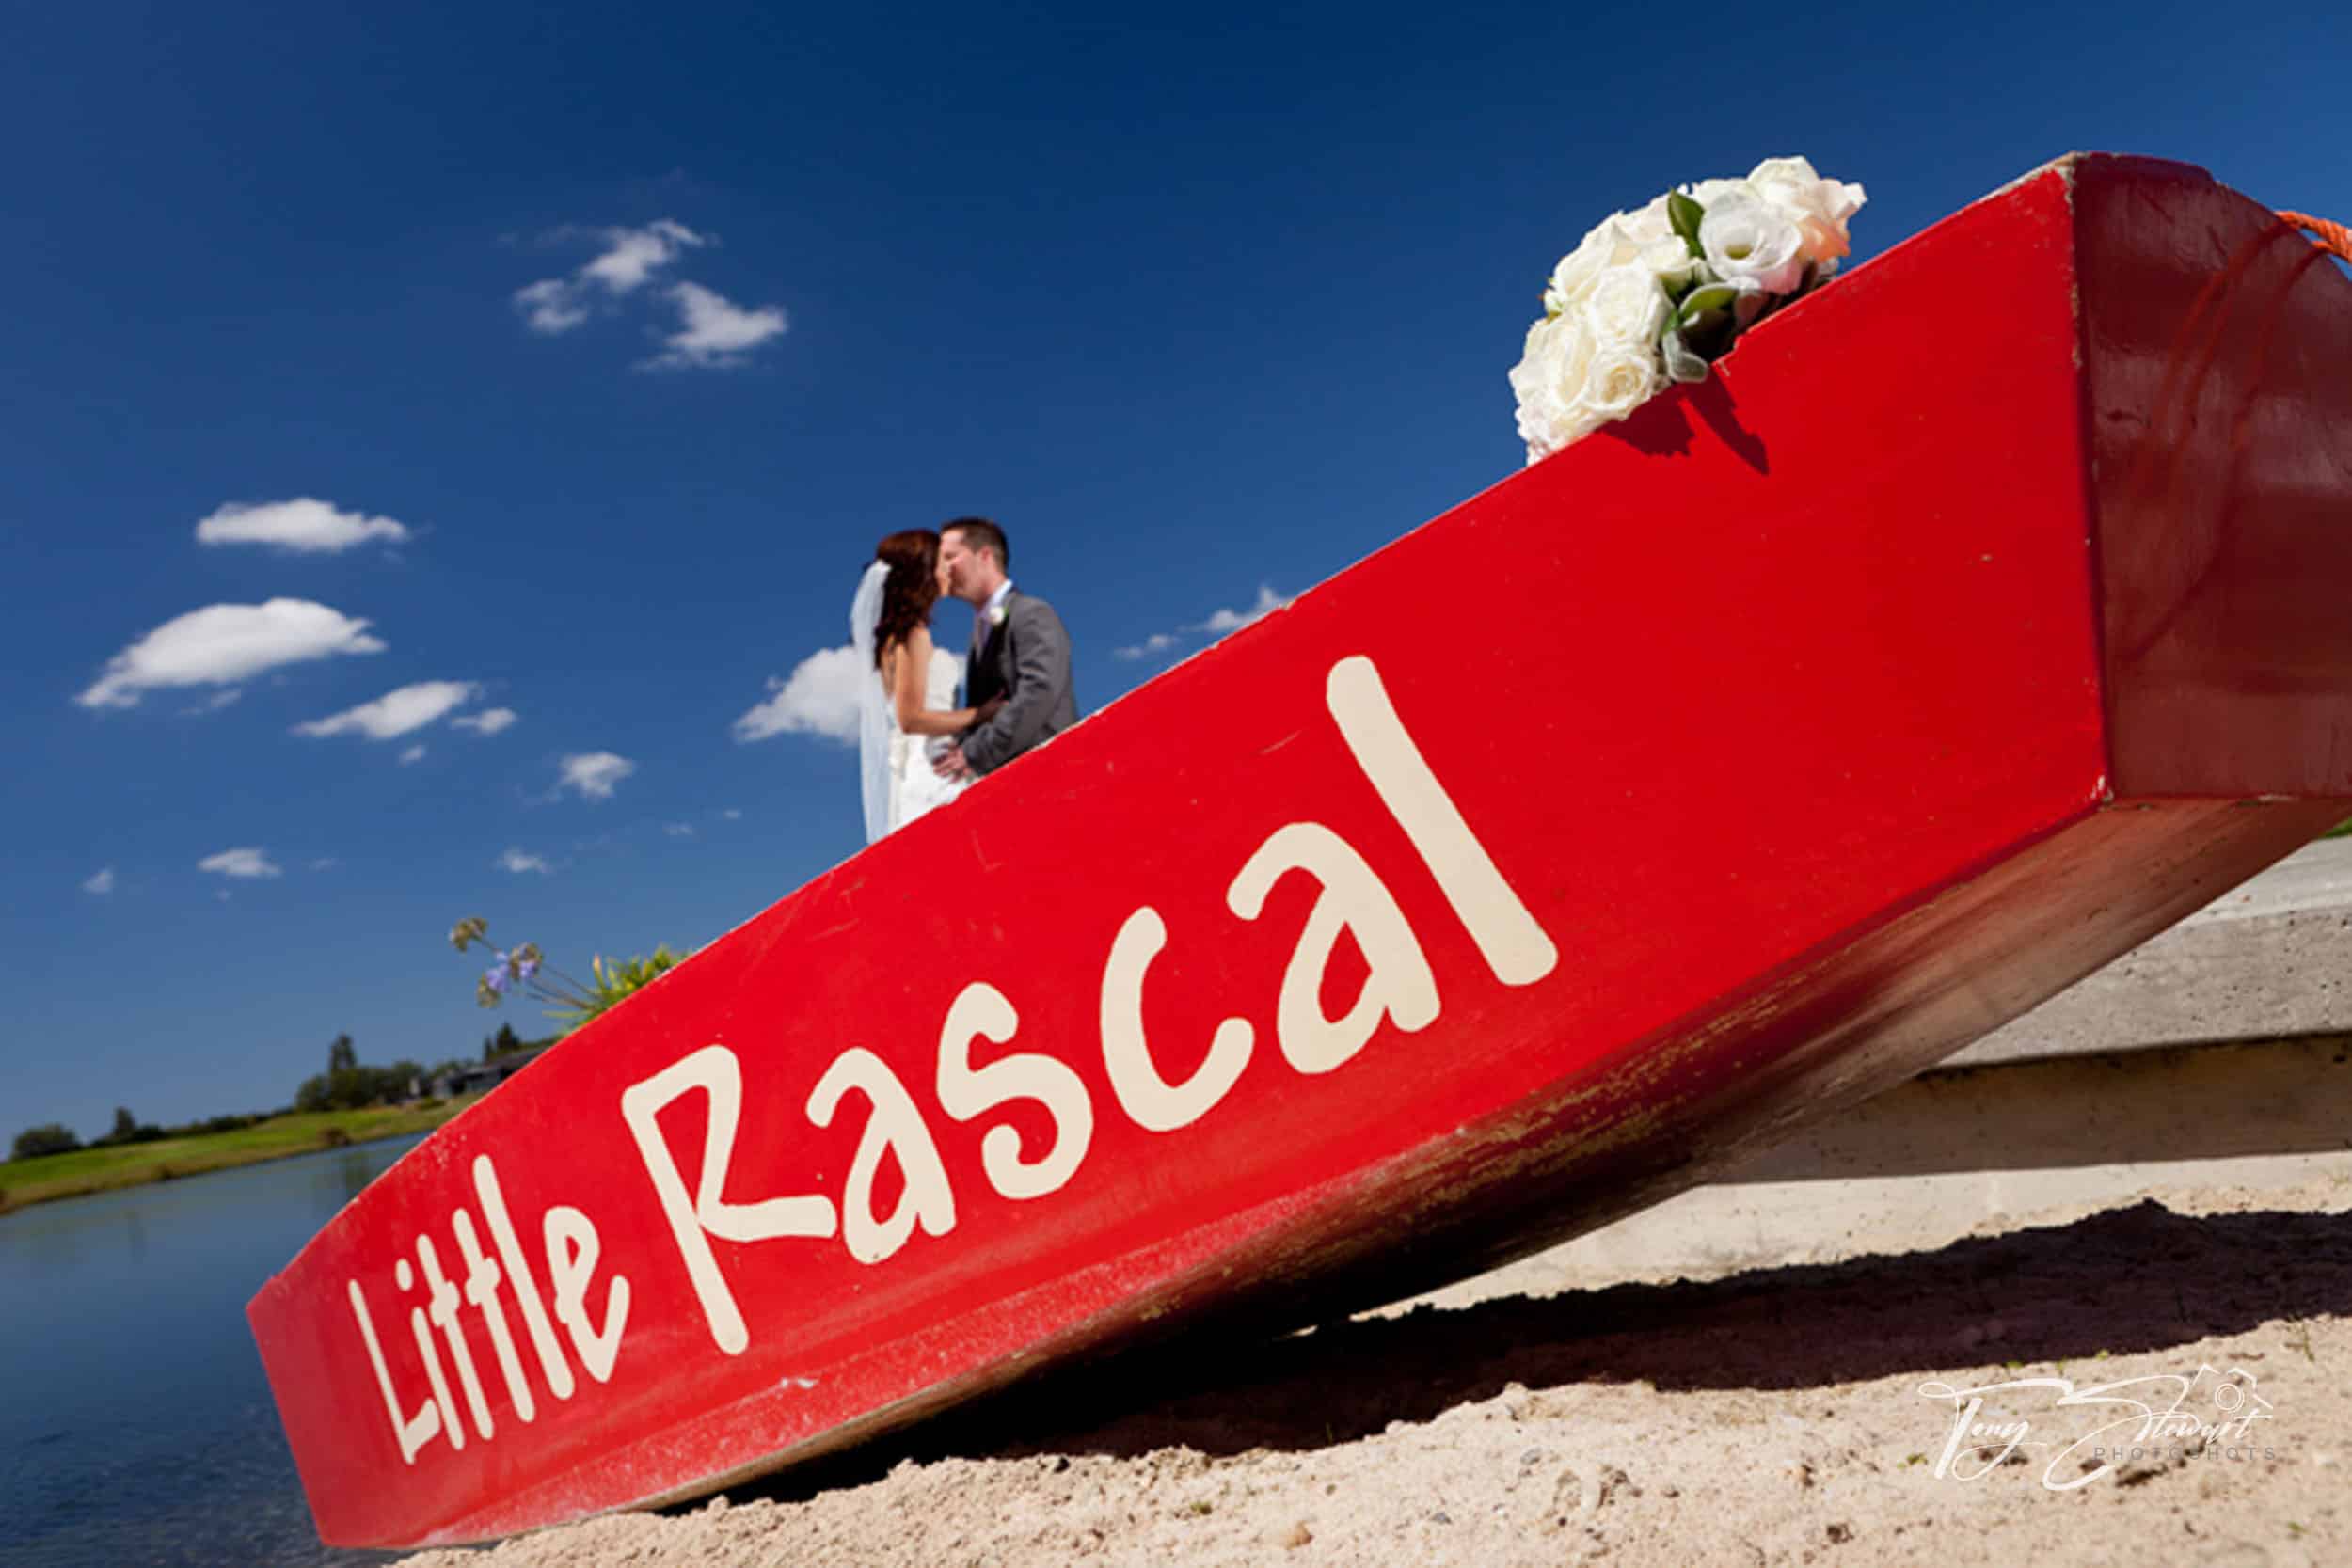 Couple kiss behind dinghy 'Little Rascal' on lake shore, Pegasus.